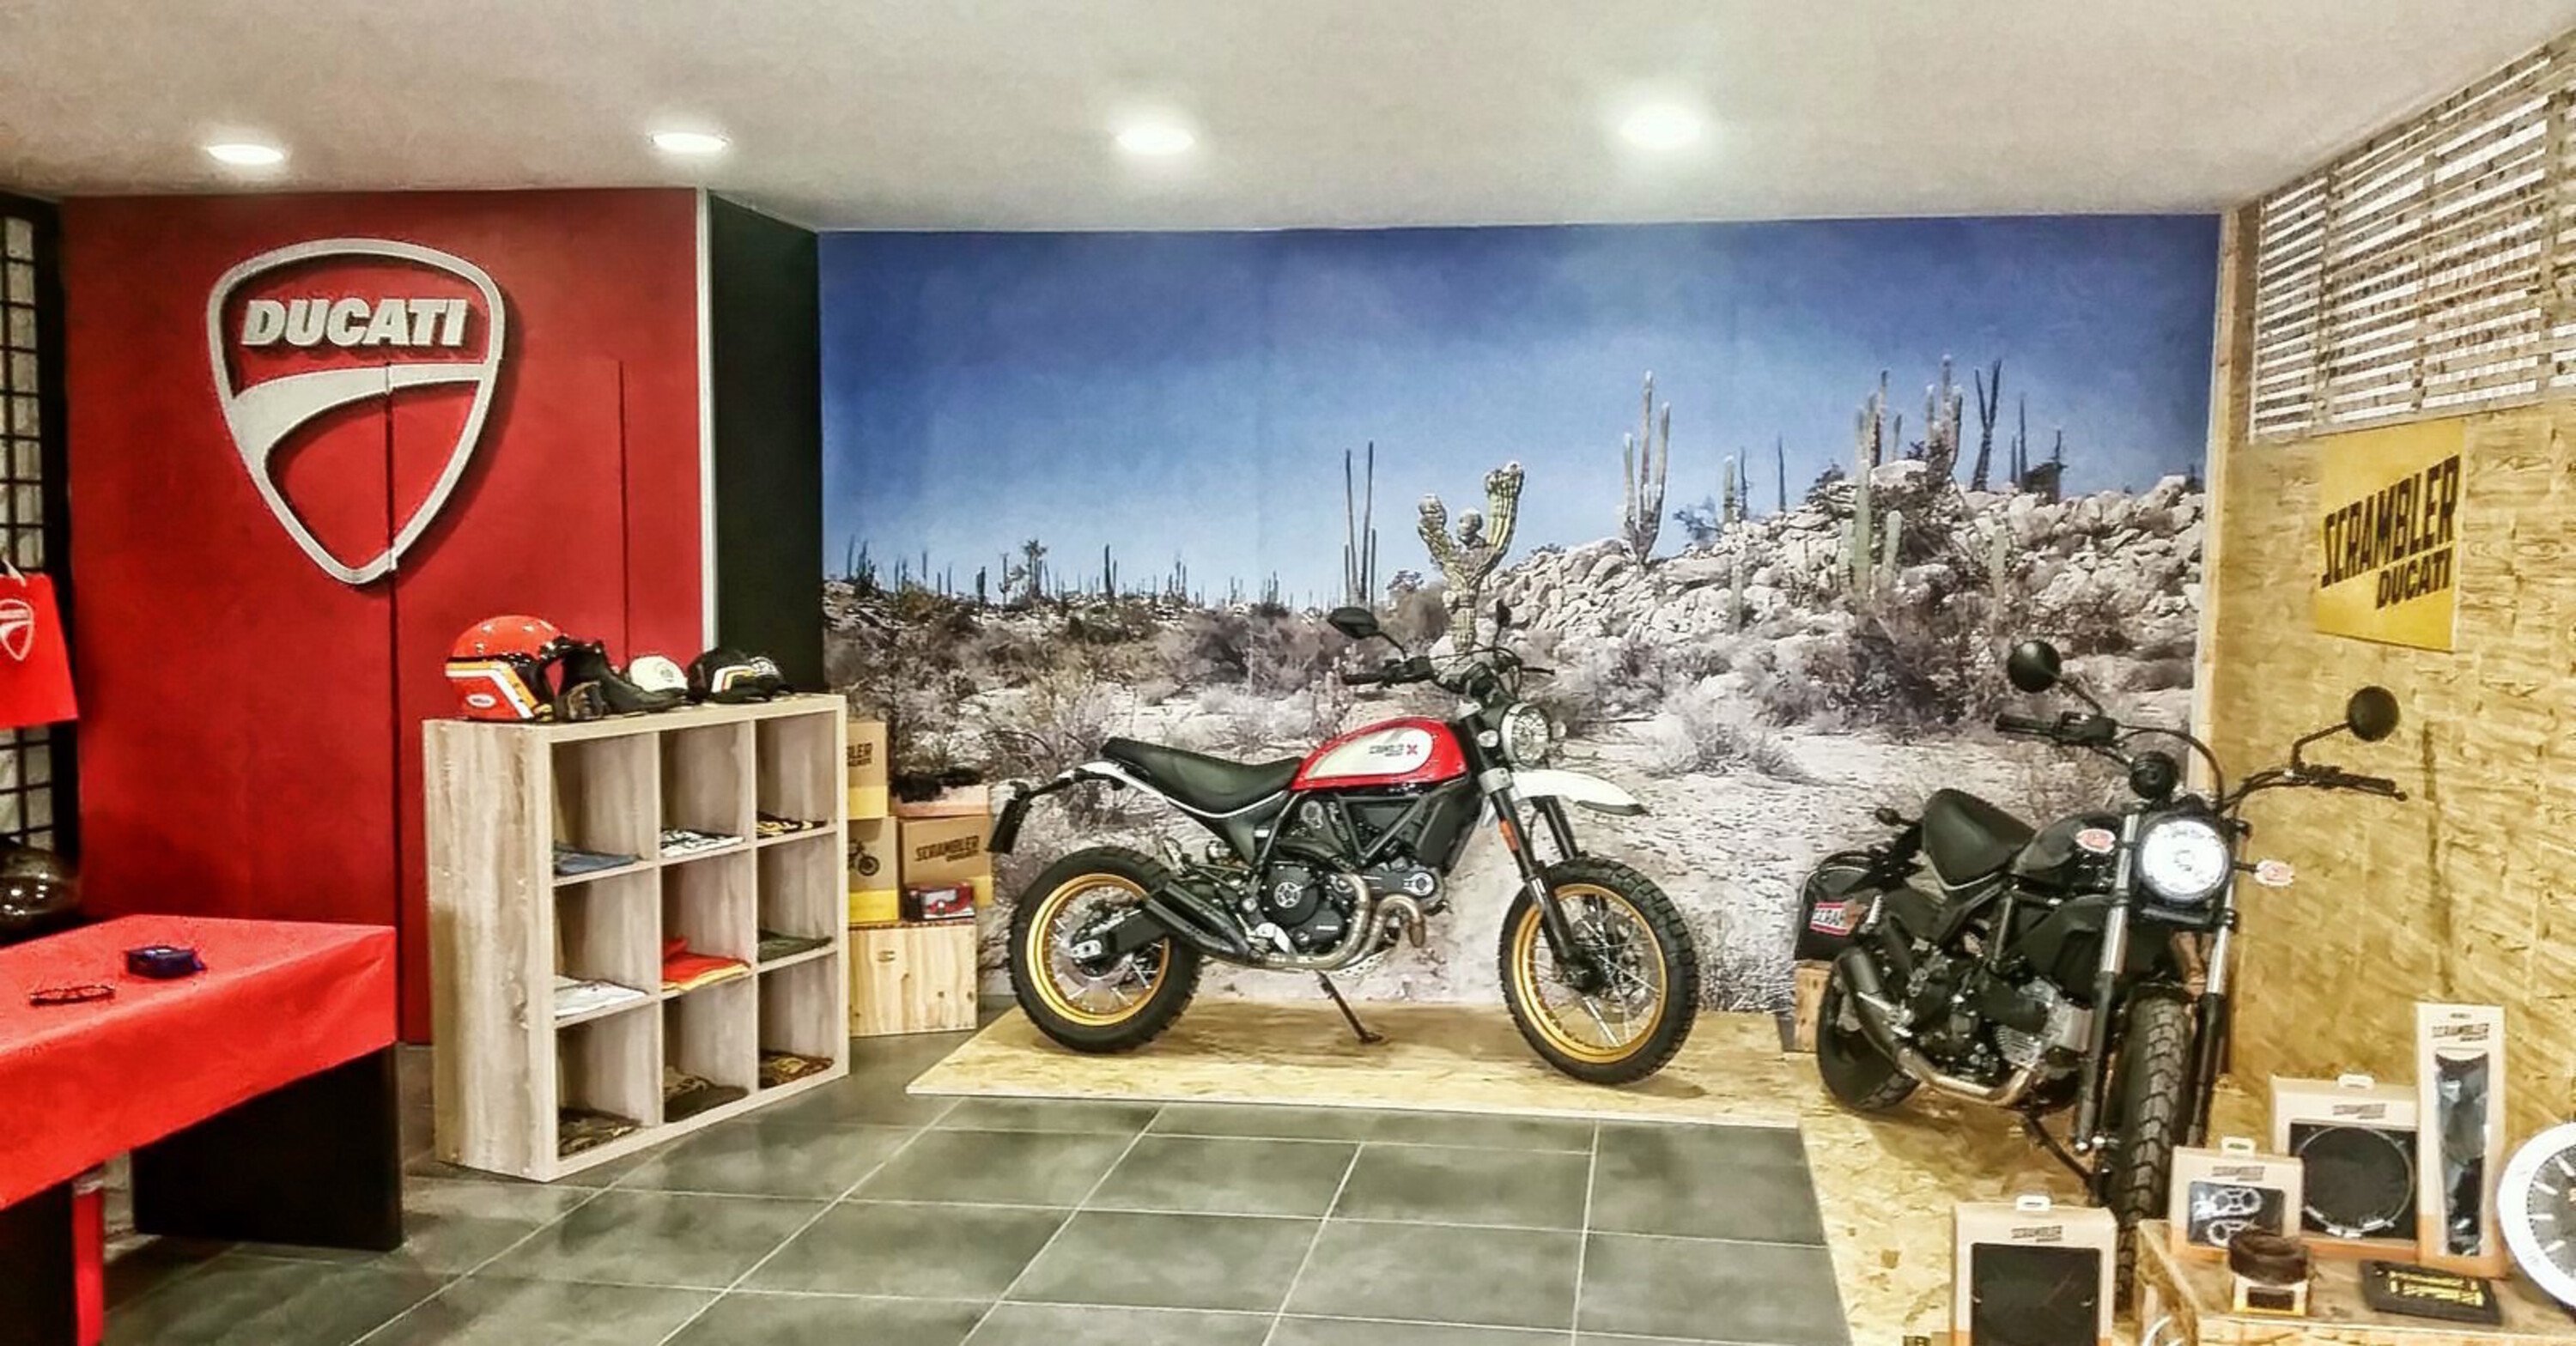 Ducati Service Appia: nuova location e showroom ampliato